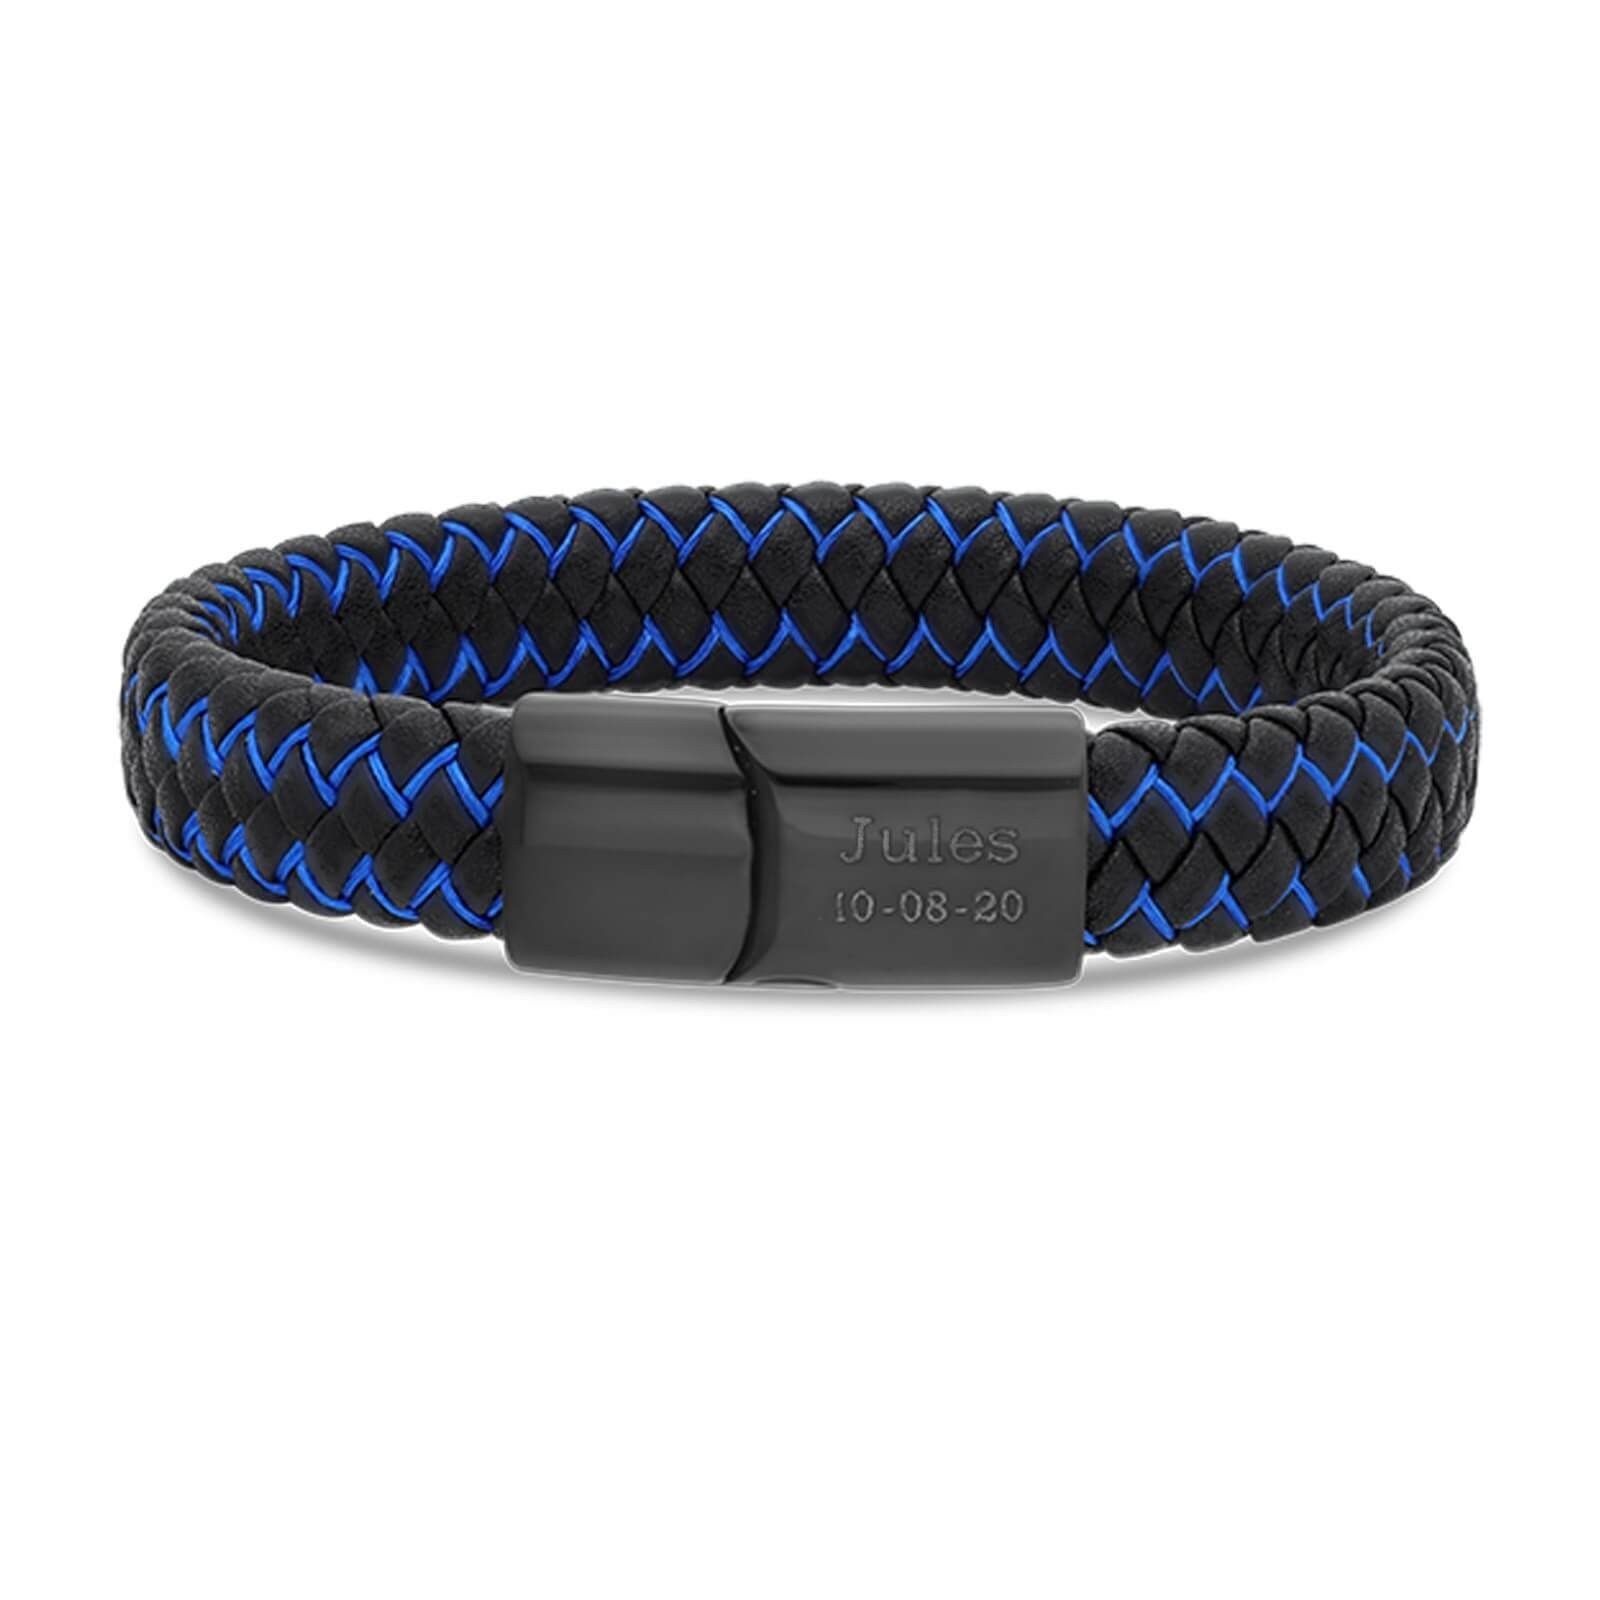 Leather Bracelet personnalisé avec prénom : avec lanière en cuir